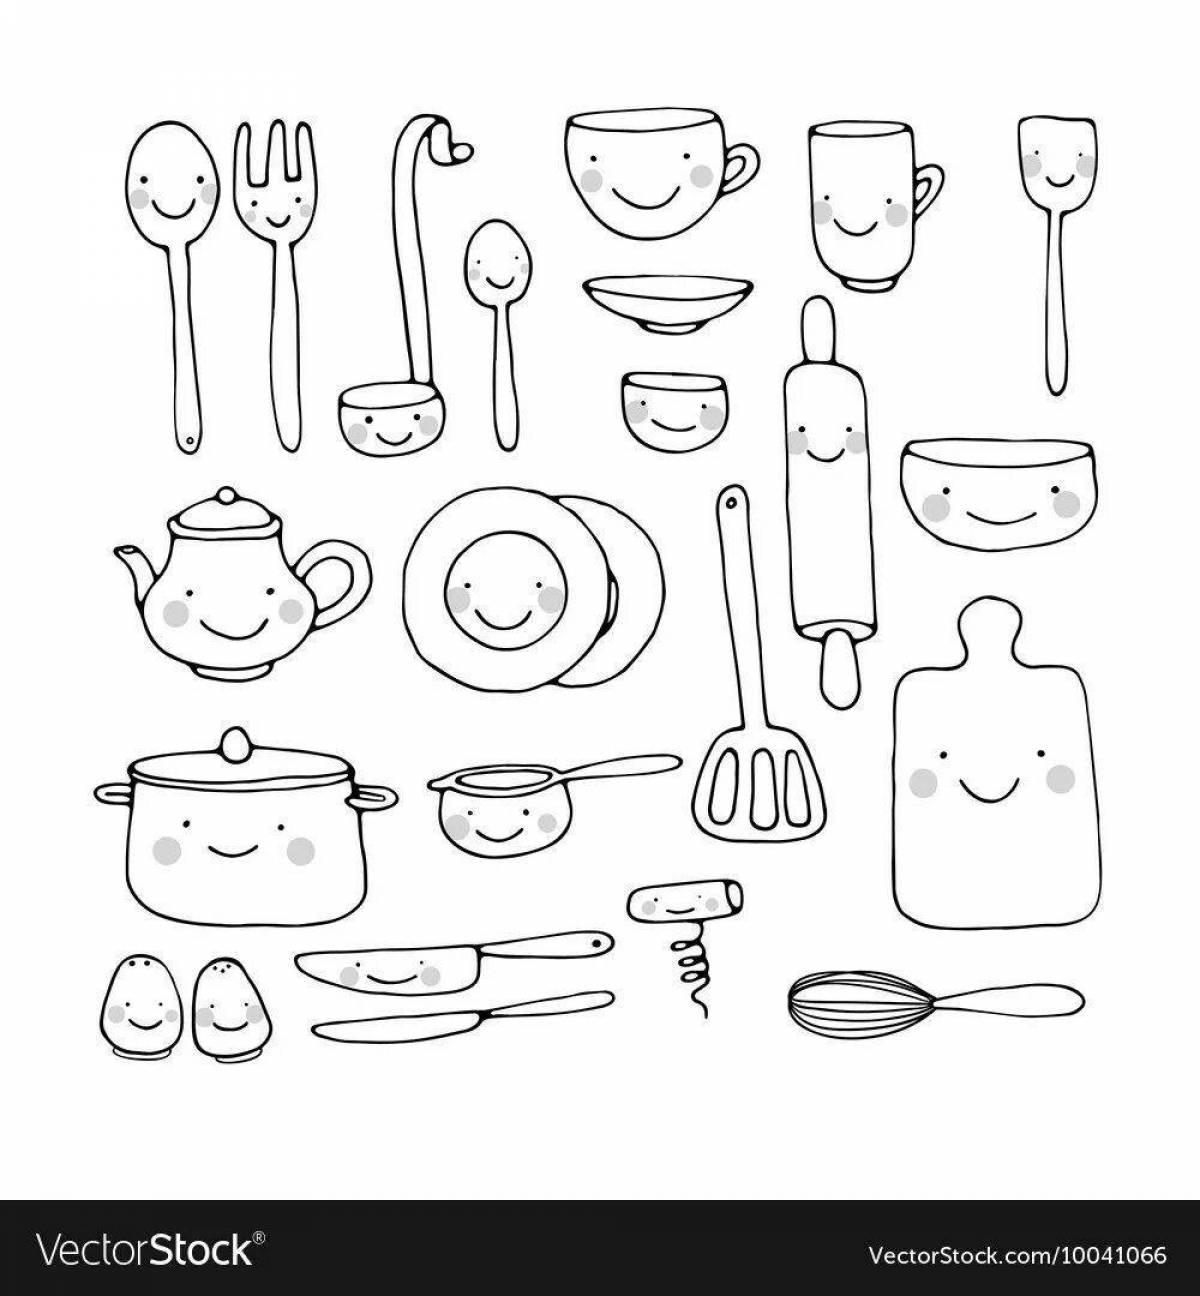 Посуда и еда #3